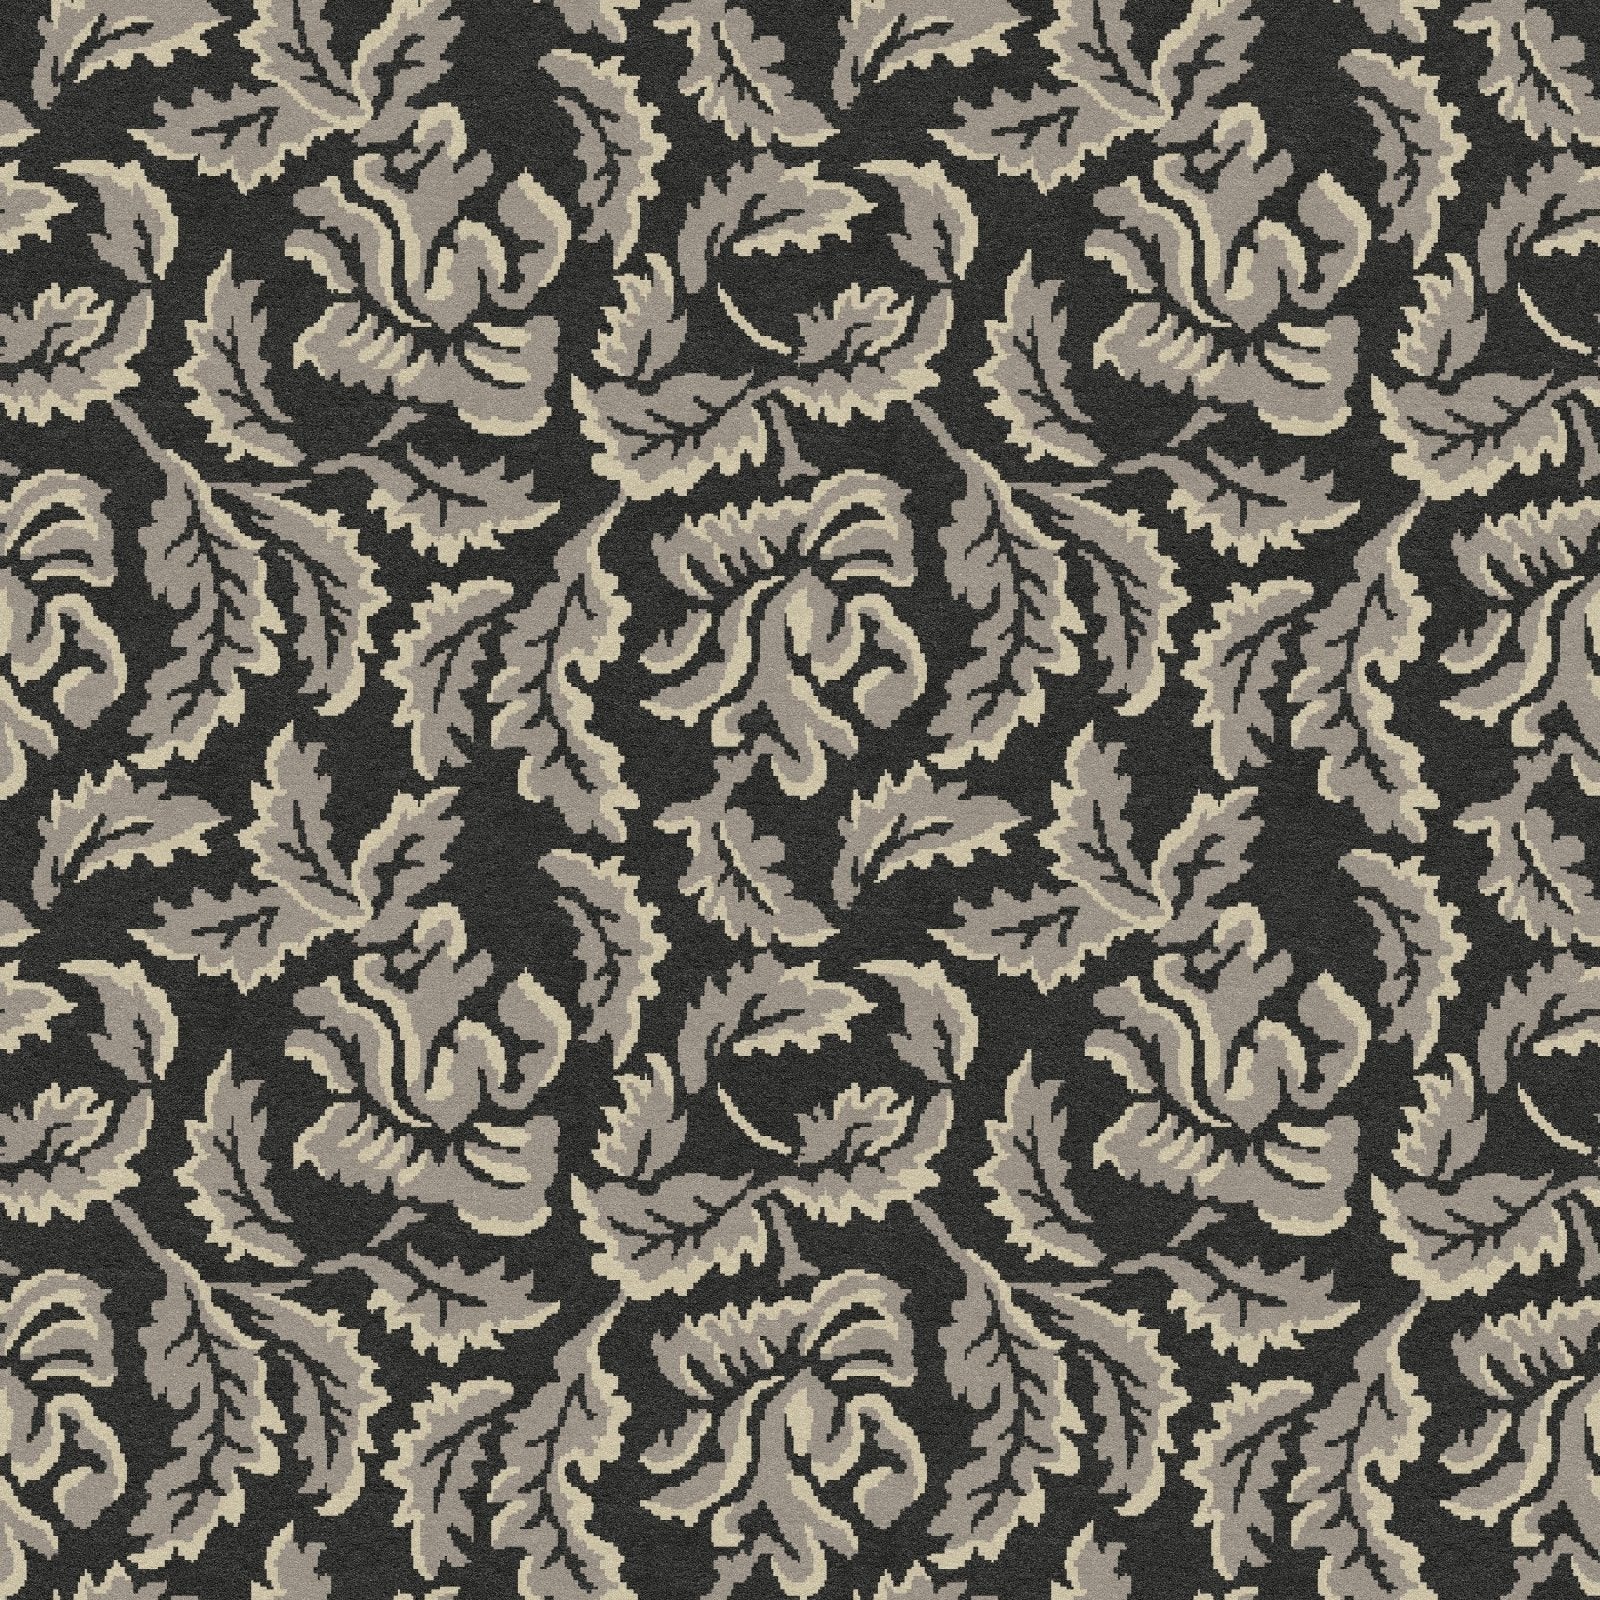 Floral Fauna 19 Custom Carpet 4' x 4' KNB Mills LLC